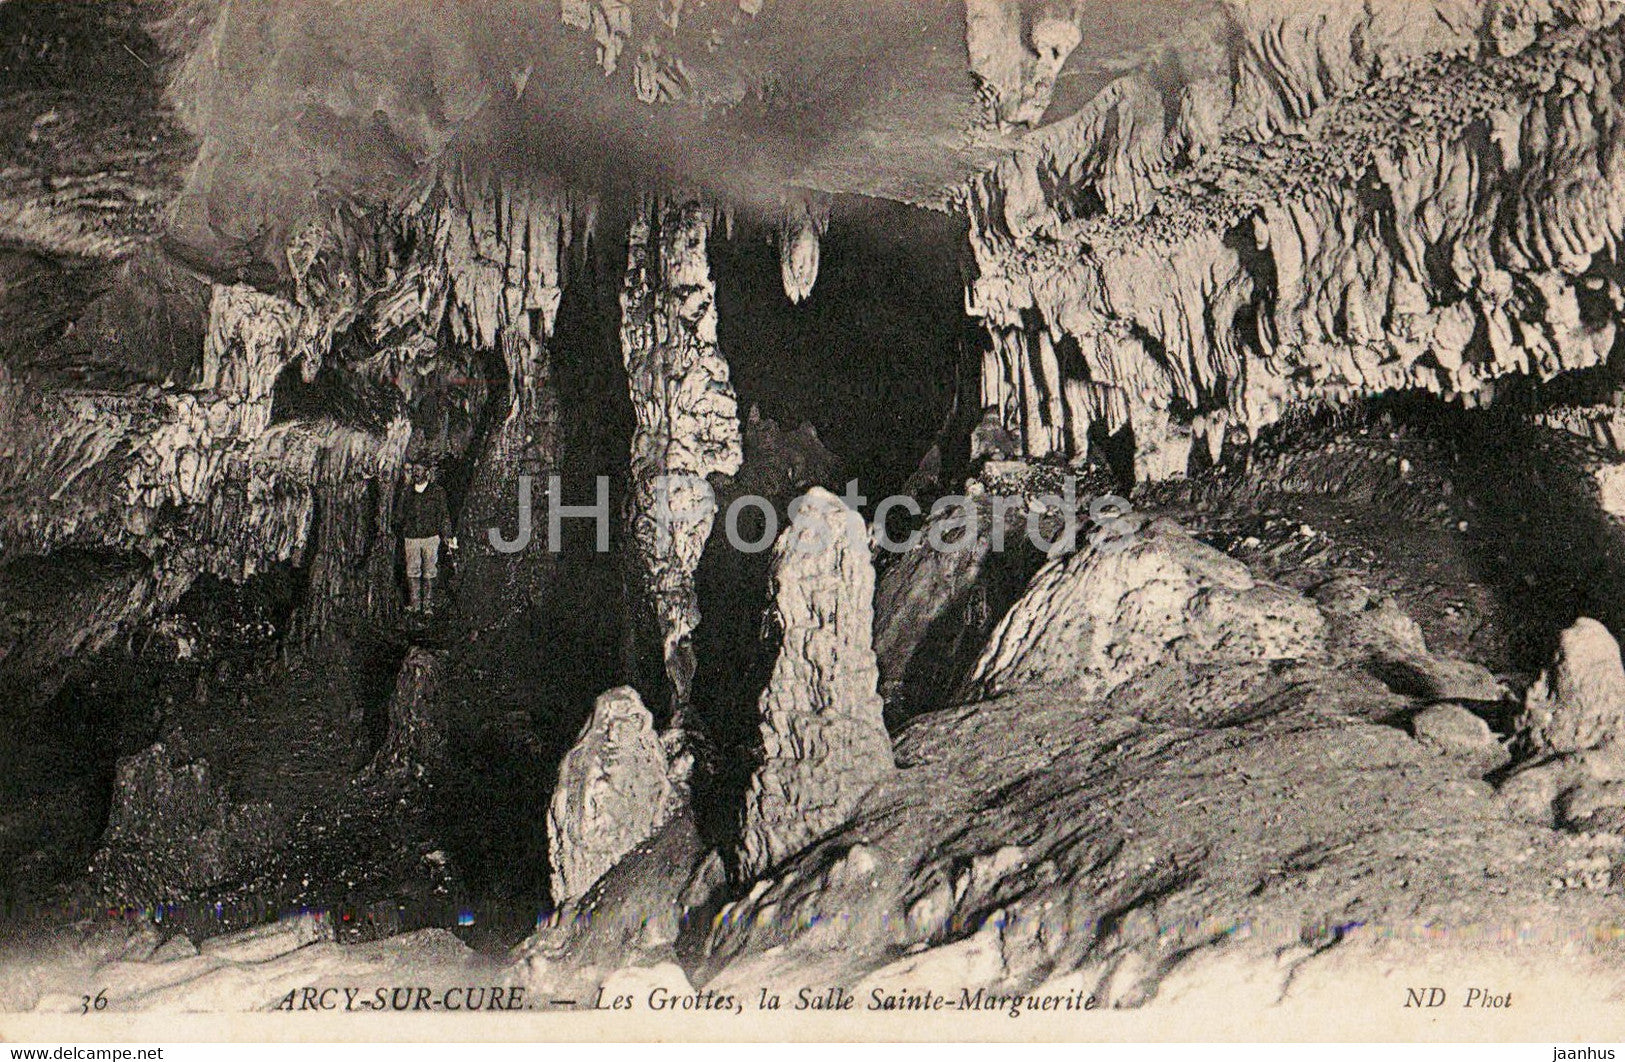 Arcy sur Cure - Les Grottes la Salle Sainte Marguerite - cave - 36 - old postcard - 1906 - France - used - JH Postcards